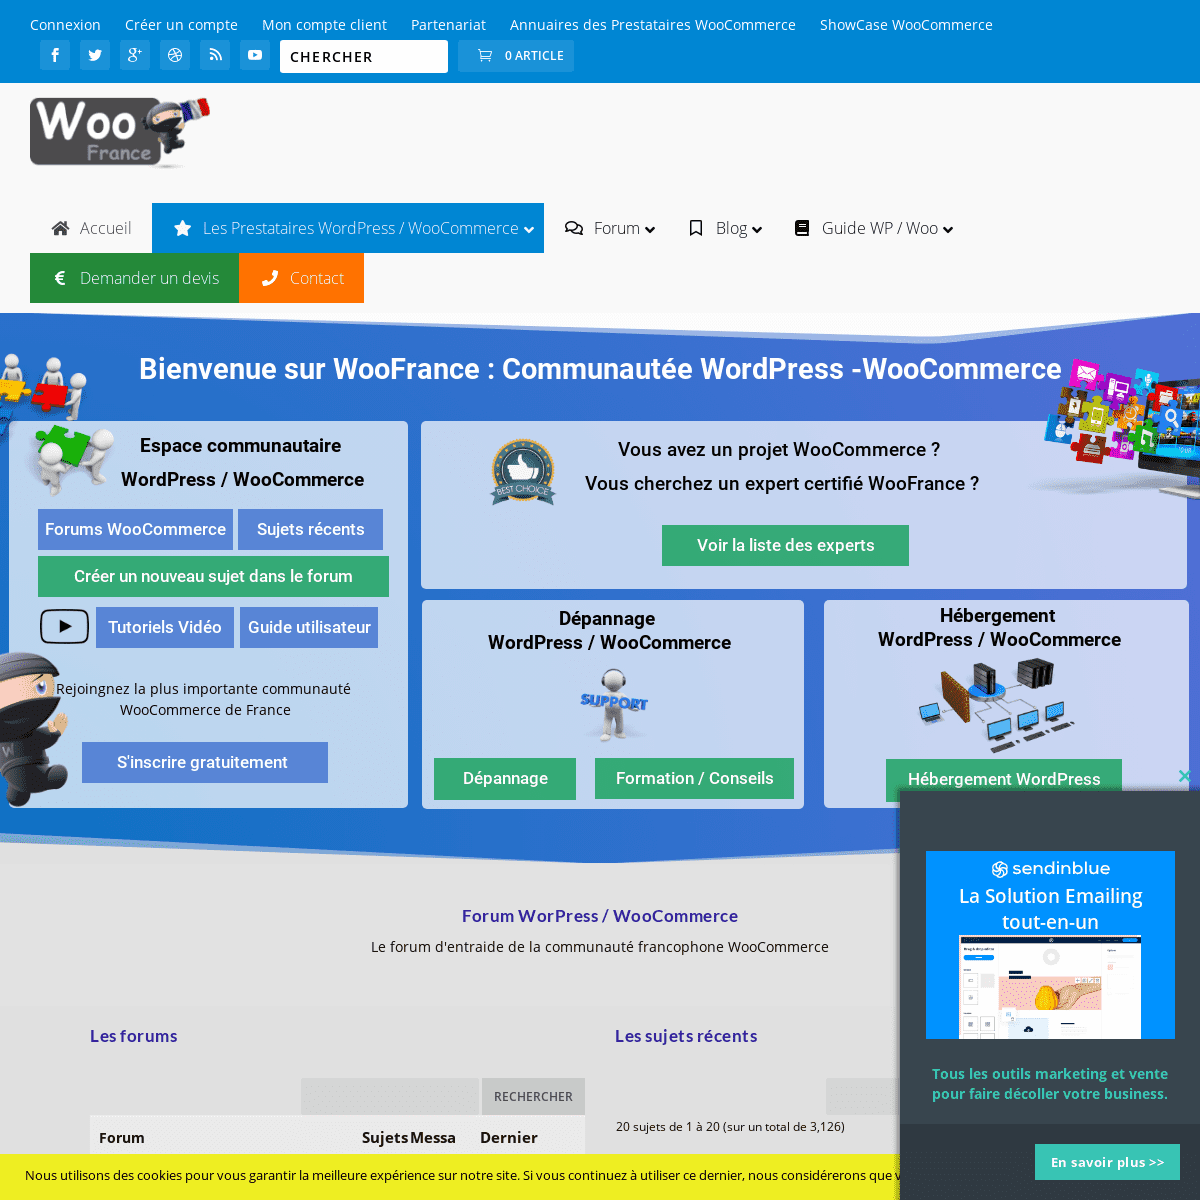 WooFrance, Communauté et Forum WooCommerce